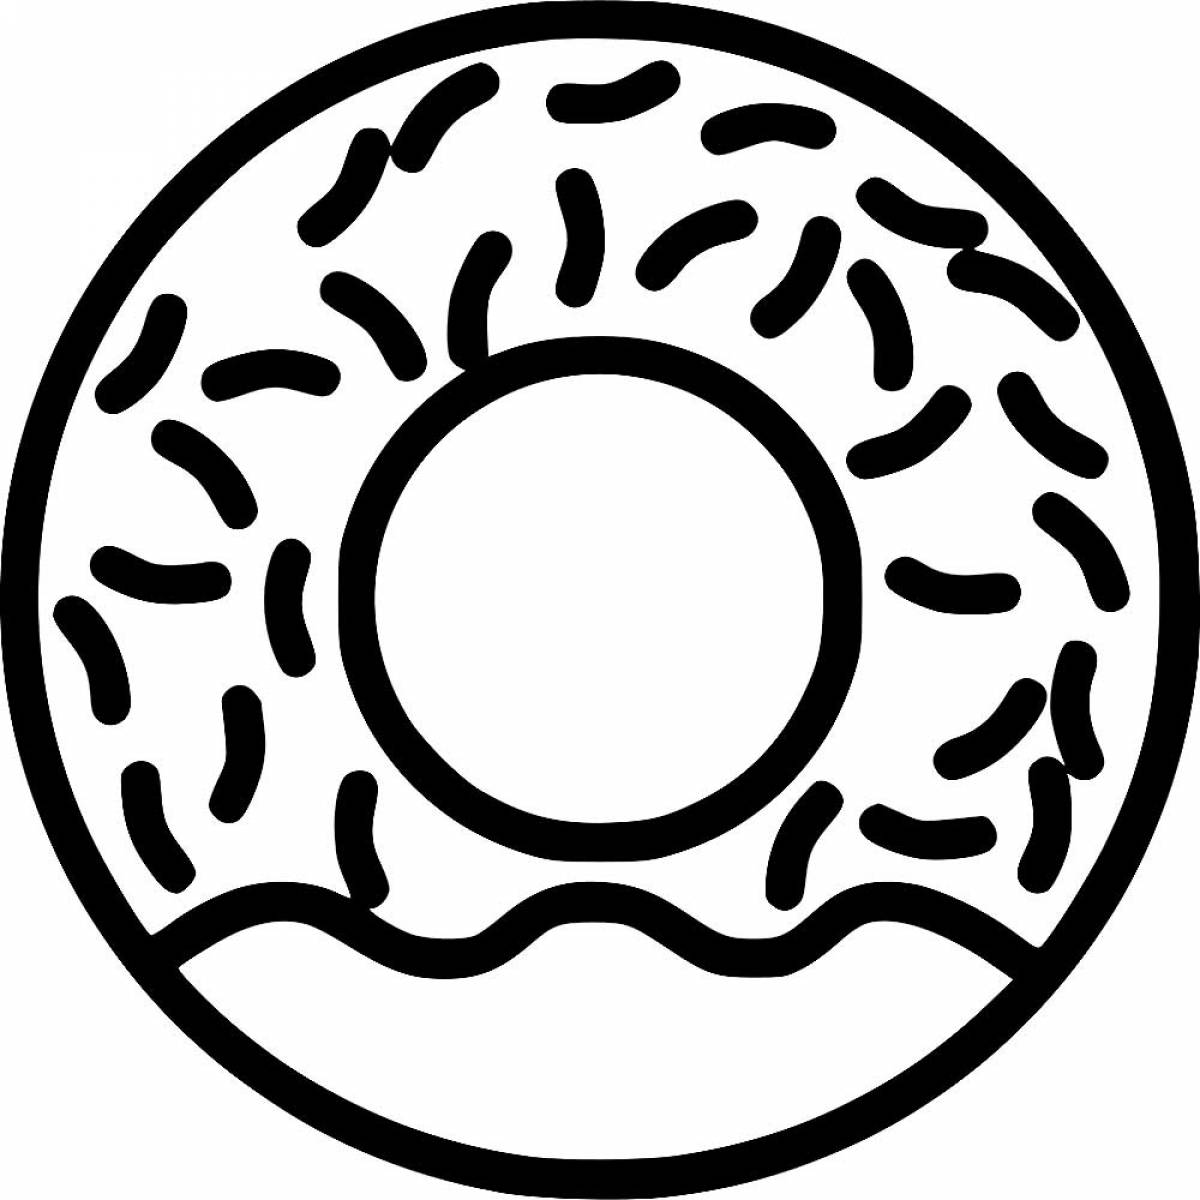 Beautiful donut